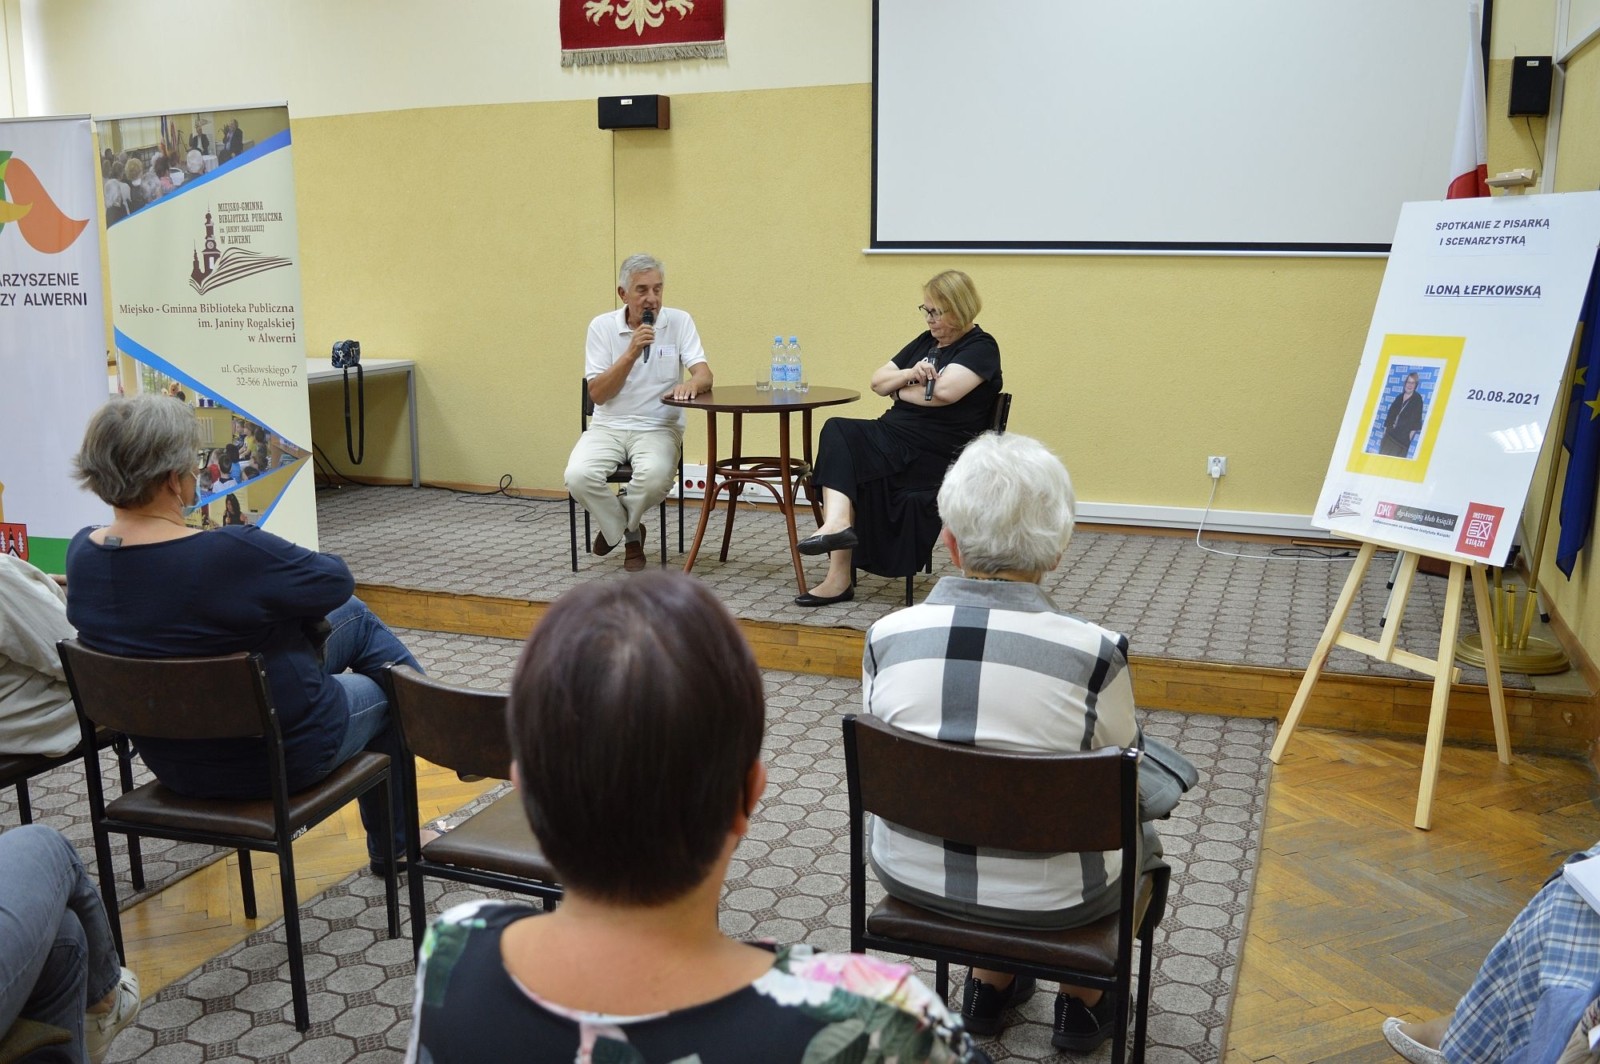 Spotkanie z pisarką i scenarzystką Iloną Łepkowską, Alwernia 20.08.2021